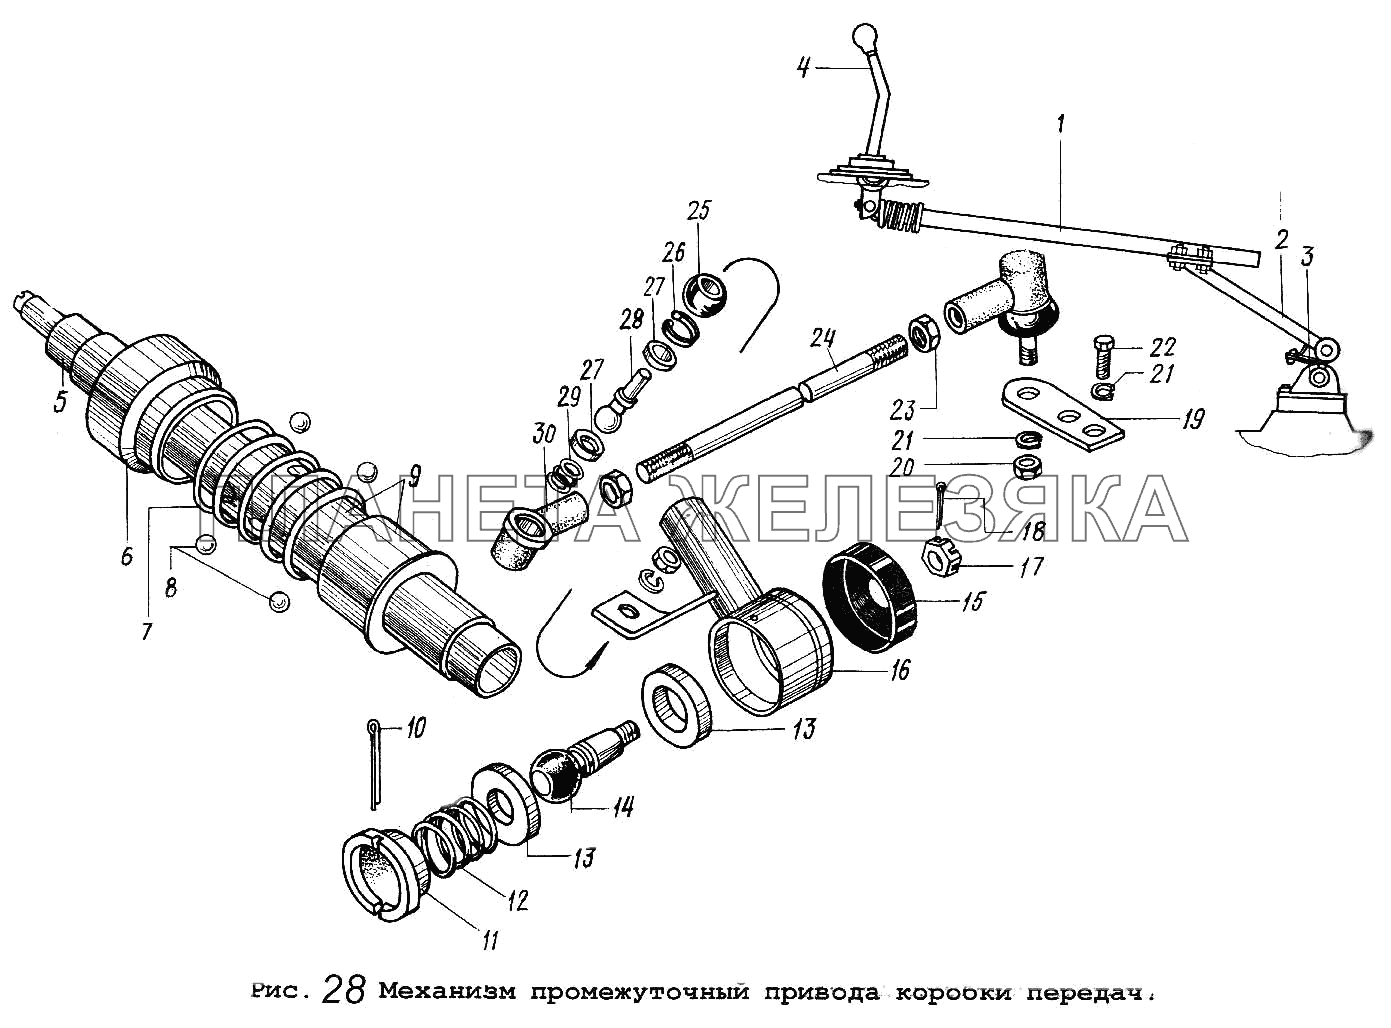 Механизм промежуточный привода коробки передач МАЗ-64229